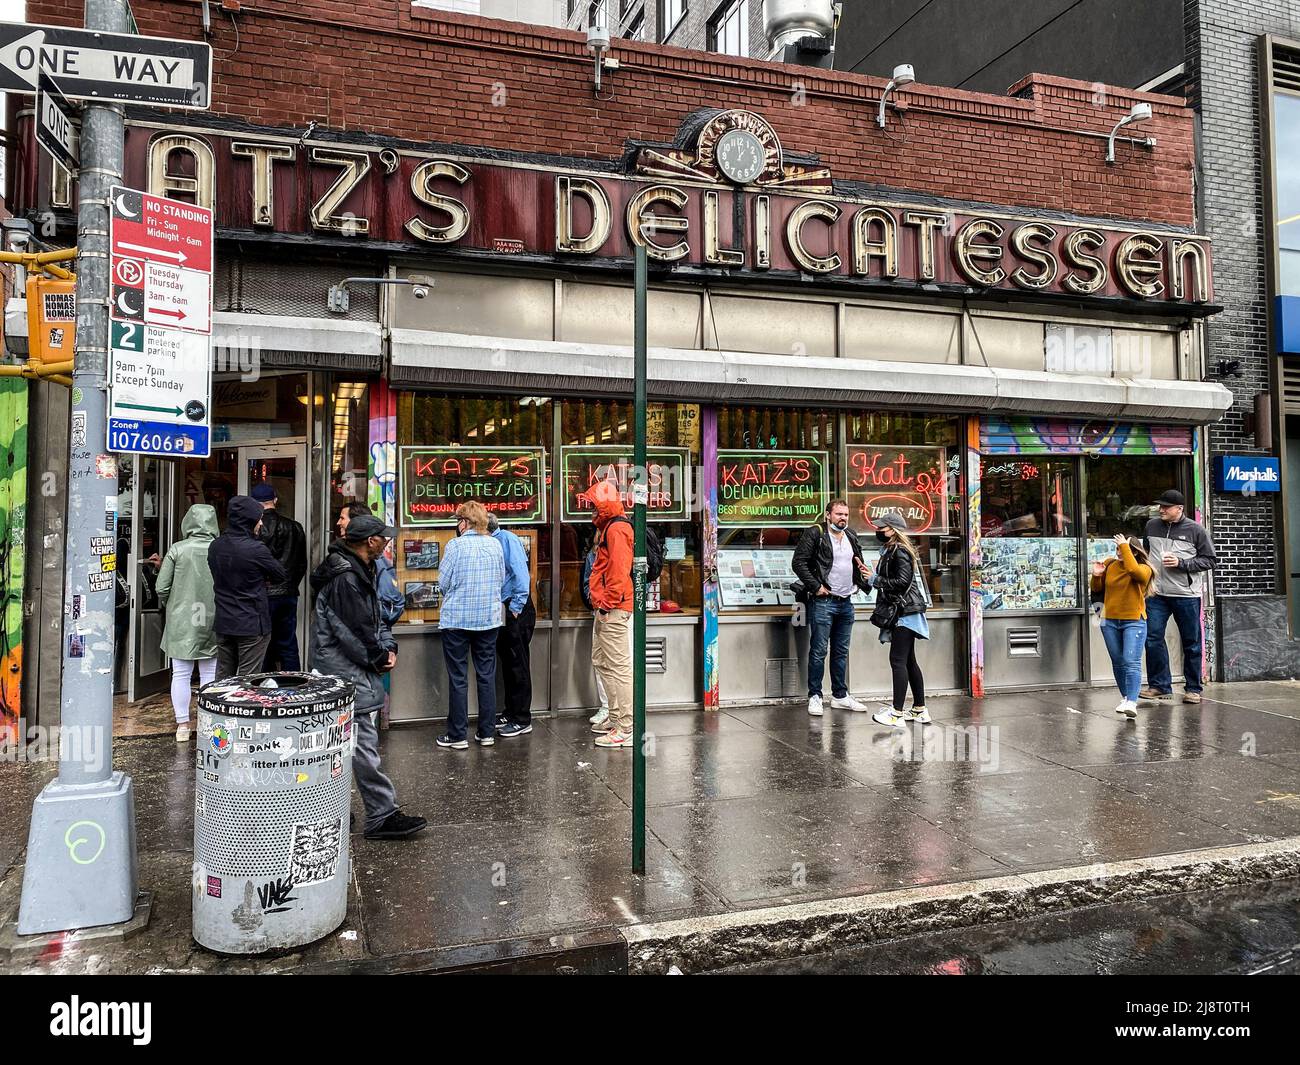 Katz´s Delicatessen. Sandwichbar in New York, bekannt aus Harry & Sally durch die Orgasmusszene von Meg Ryan. Stock Photo